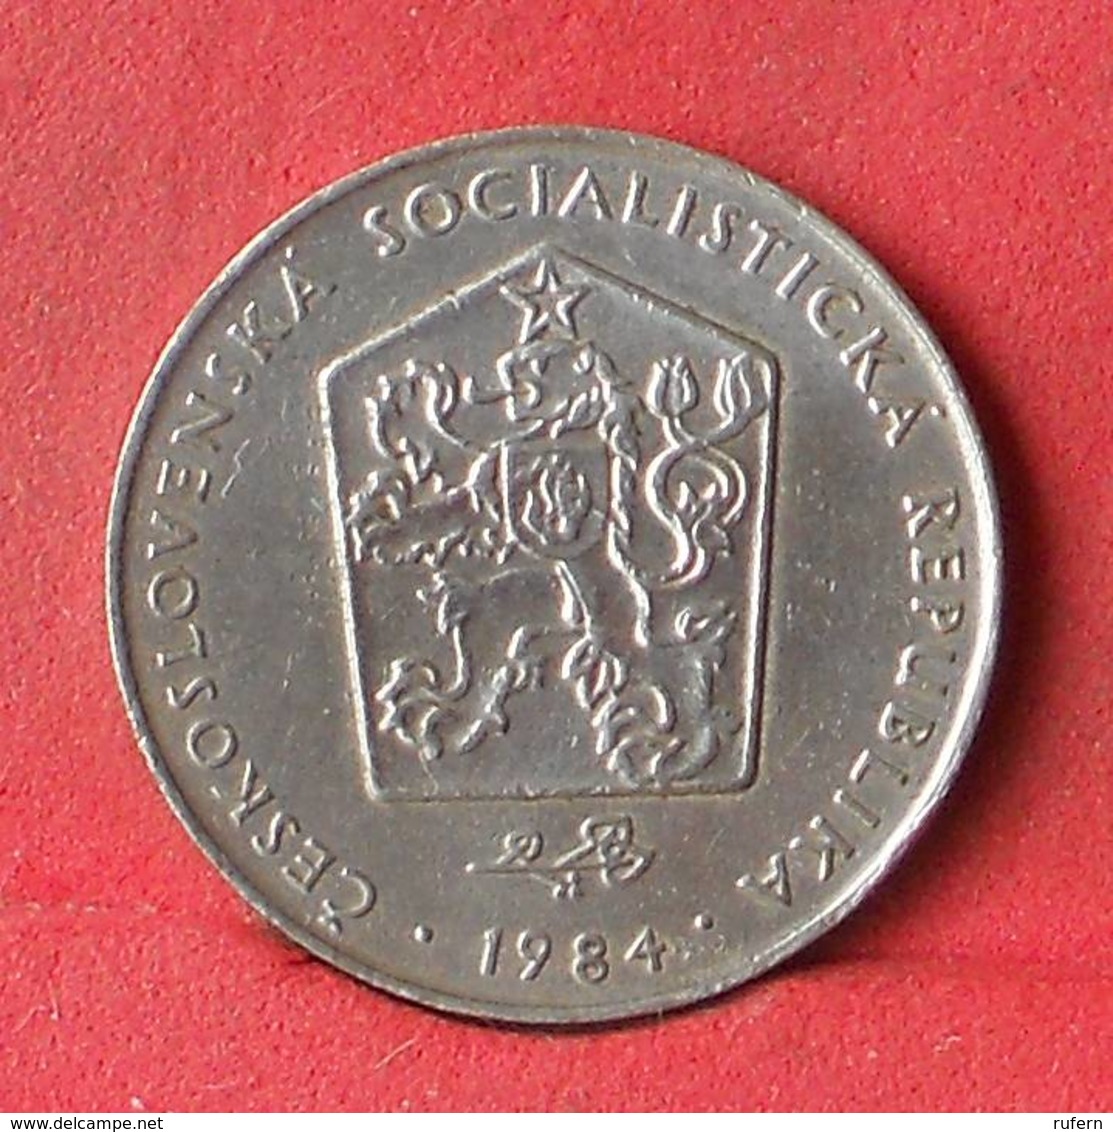 CZECH REPUBLIC 2 KORUNY 1984 -    KM# 9 - (Nº28440) - Tchéquie